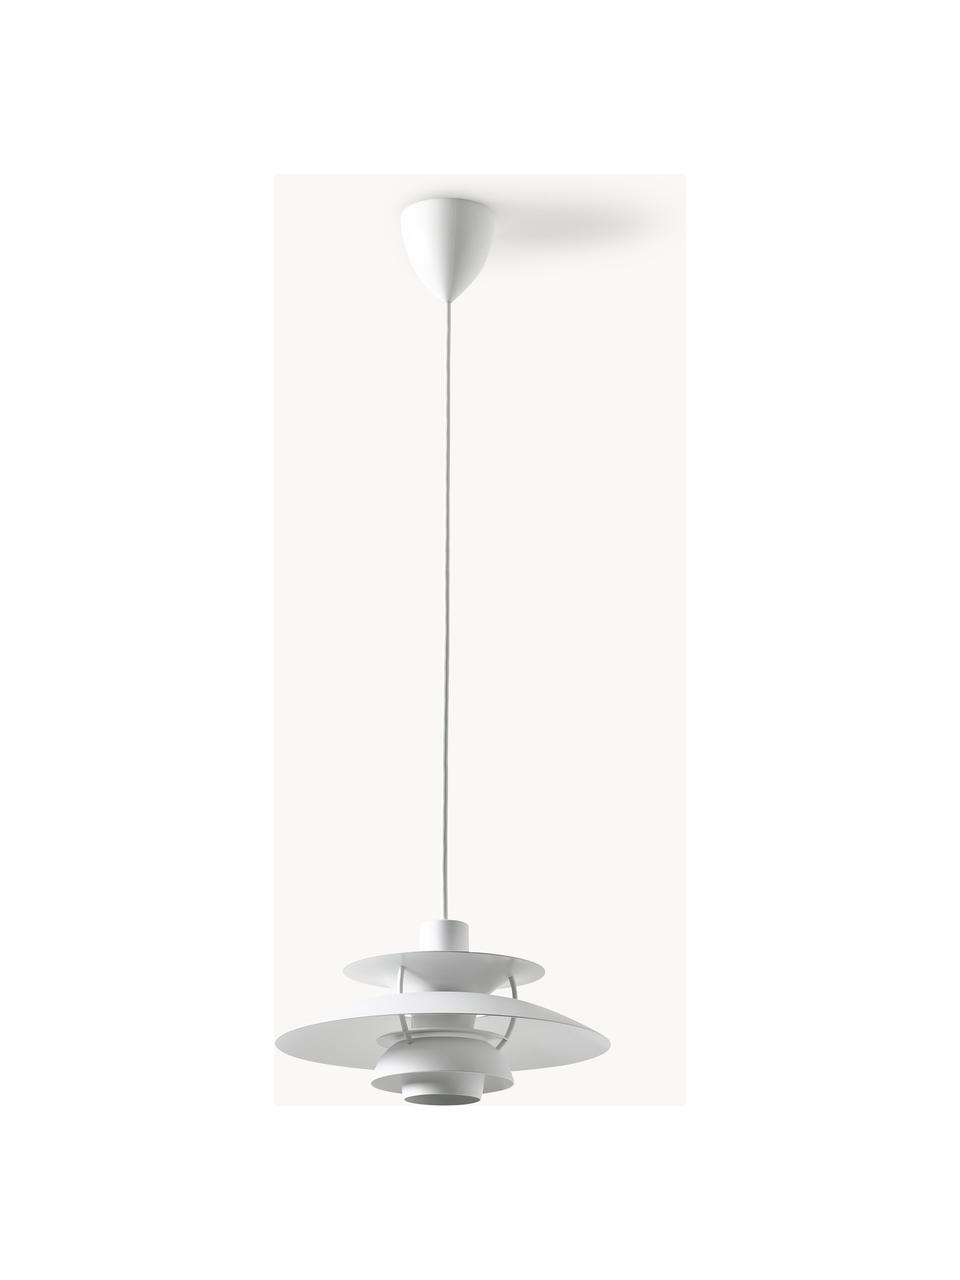 Lampa wisząca PH 5, różne rozmiary, Biały, Ø 30 x 16 cm